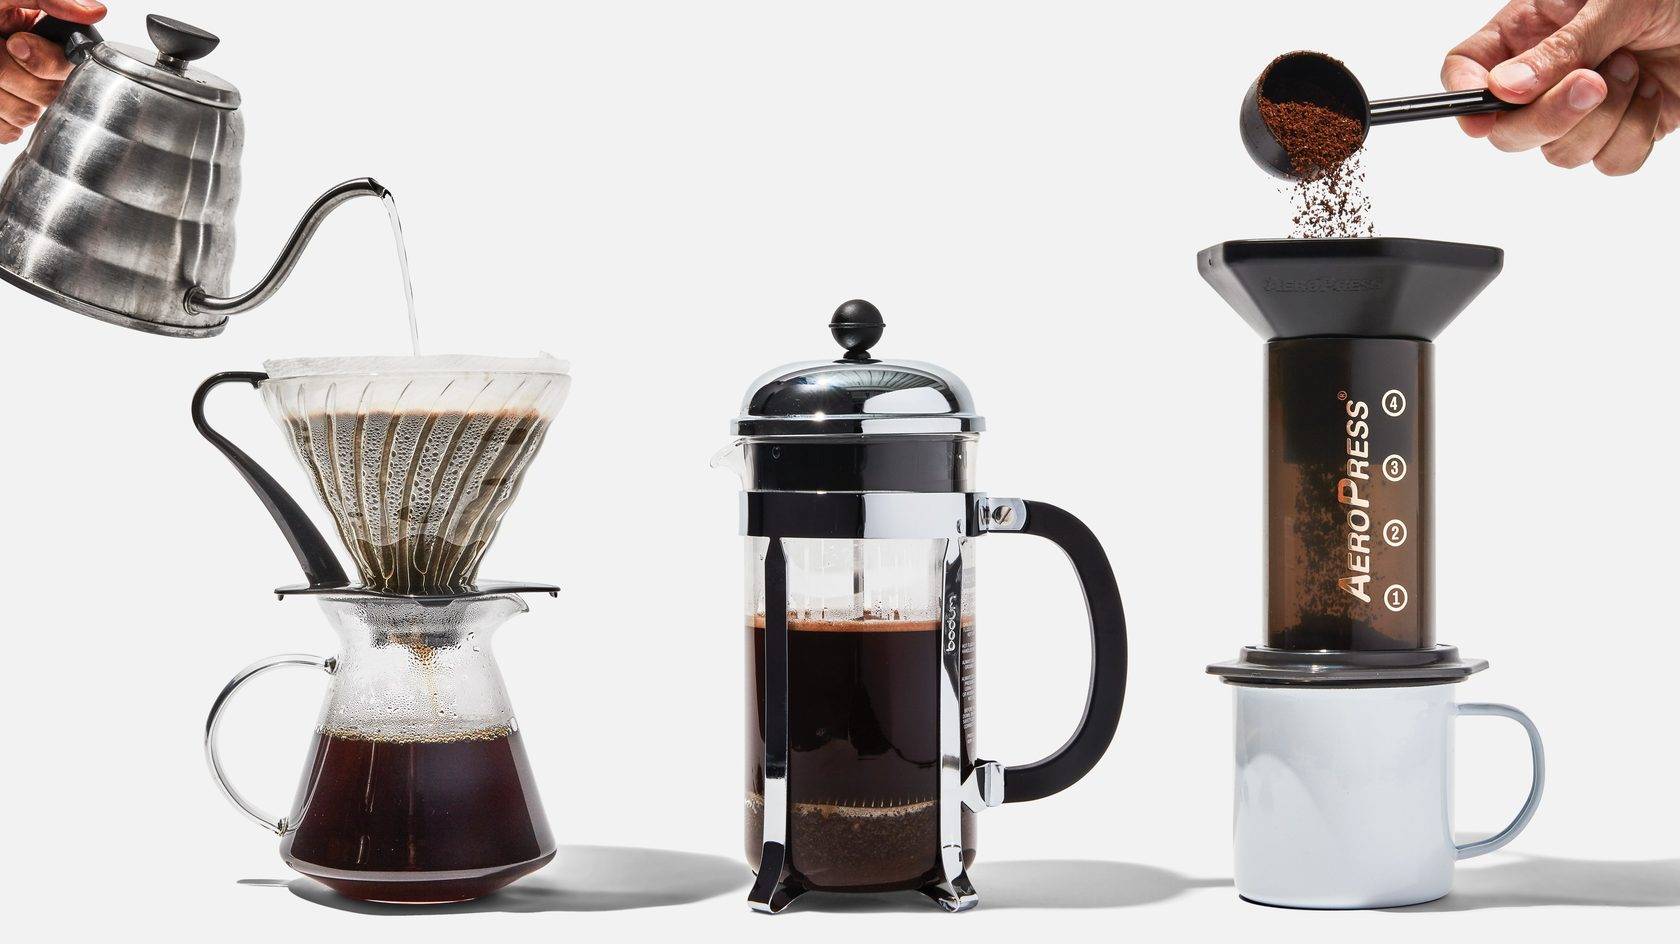 Френч-пресс для кофе - как пользоваться чтобы заварить вкусный кофе